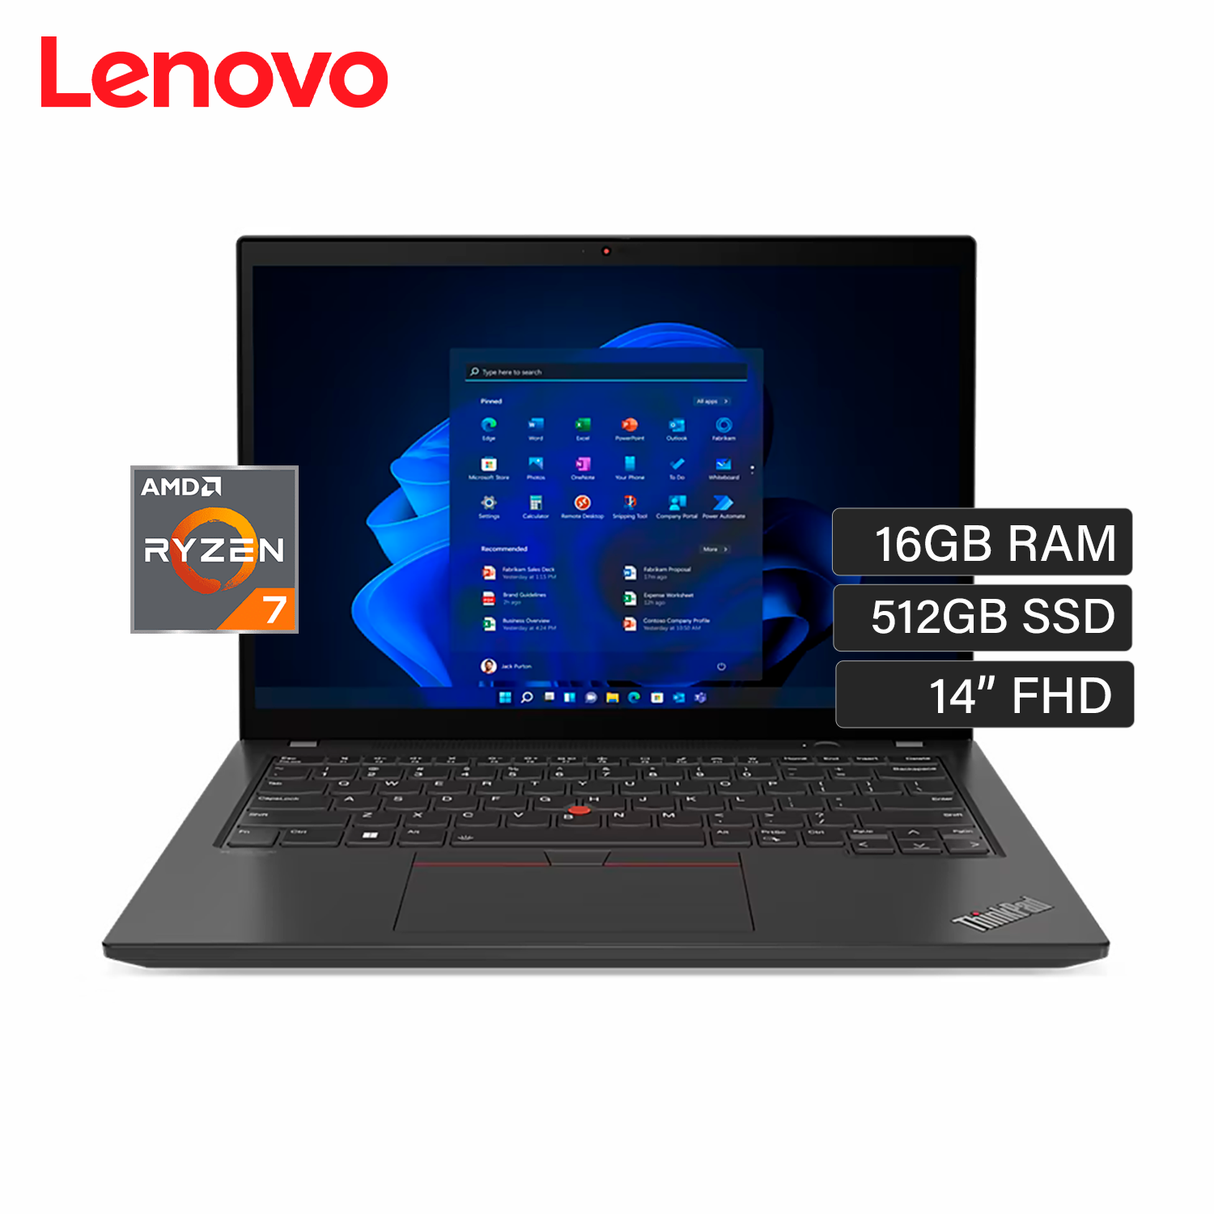 El nuevo portátil de Lenovo con Windows no es solo un portátil